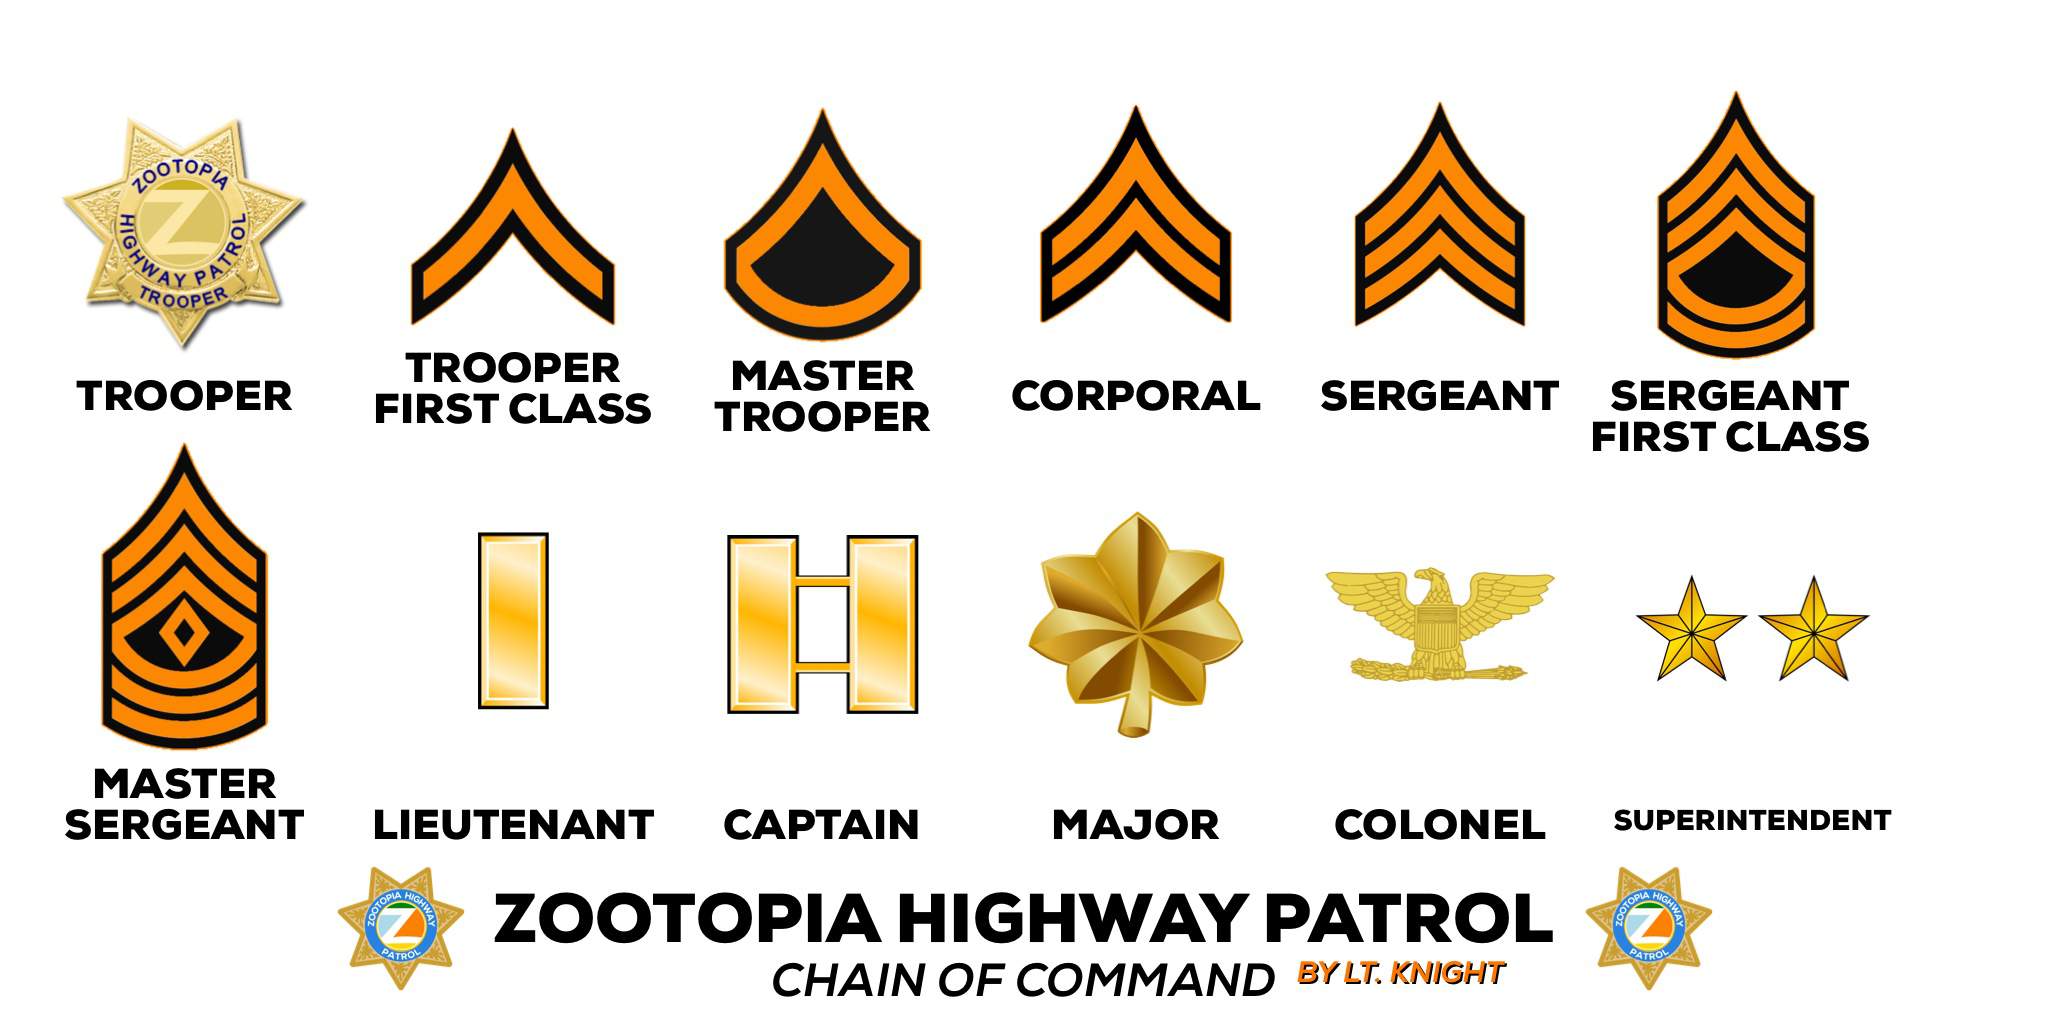 New Zootopia Highway Patrol (ZHP) Ranks Zootopia Amino Amino